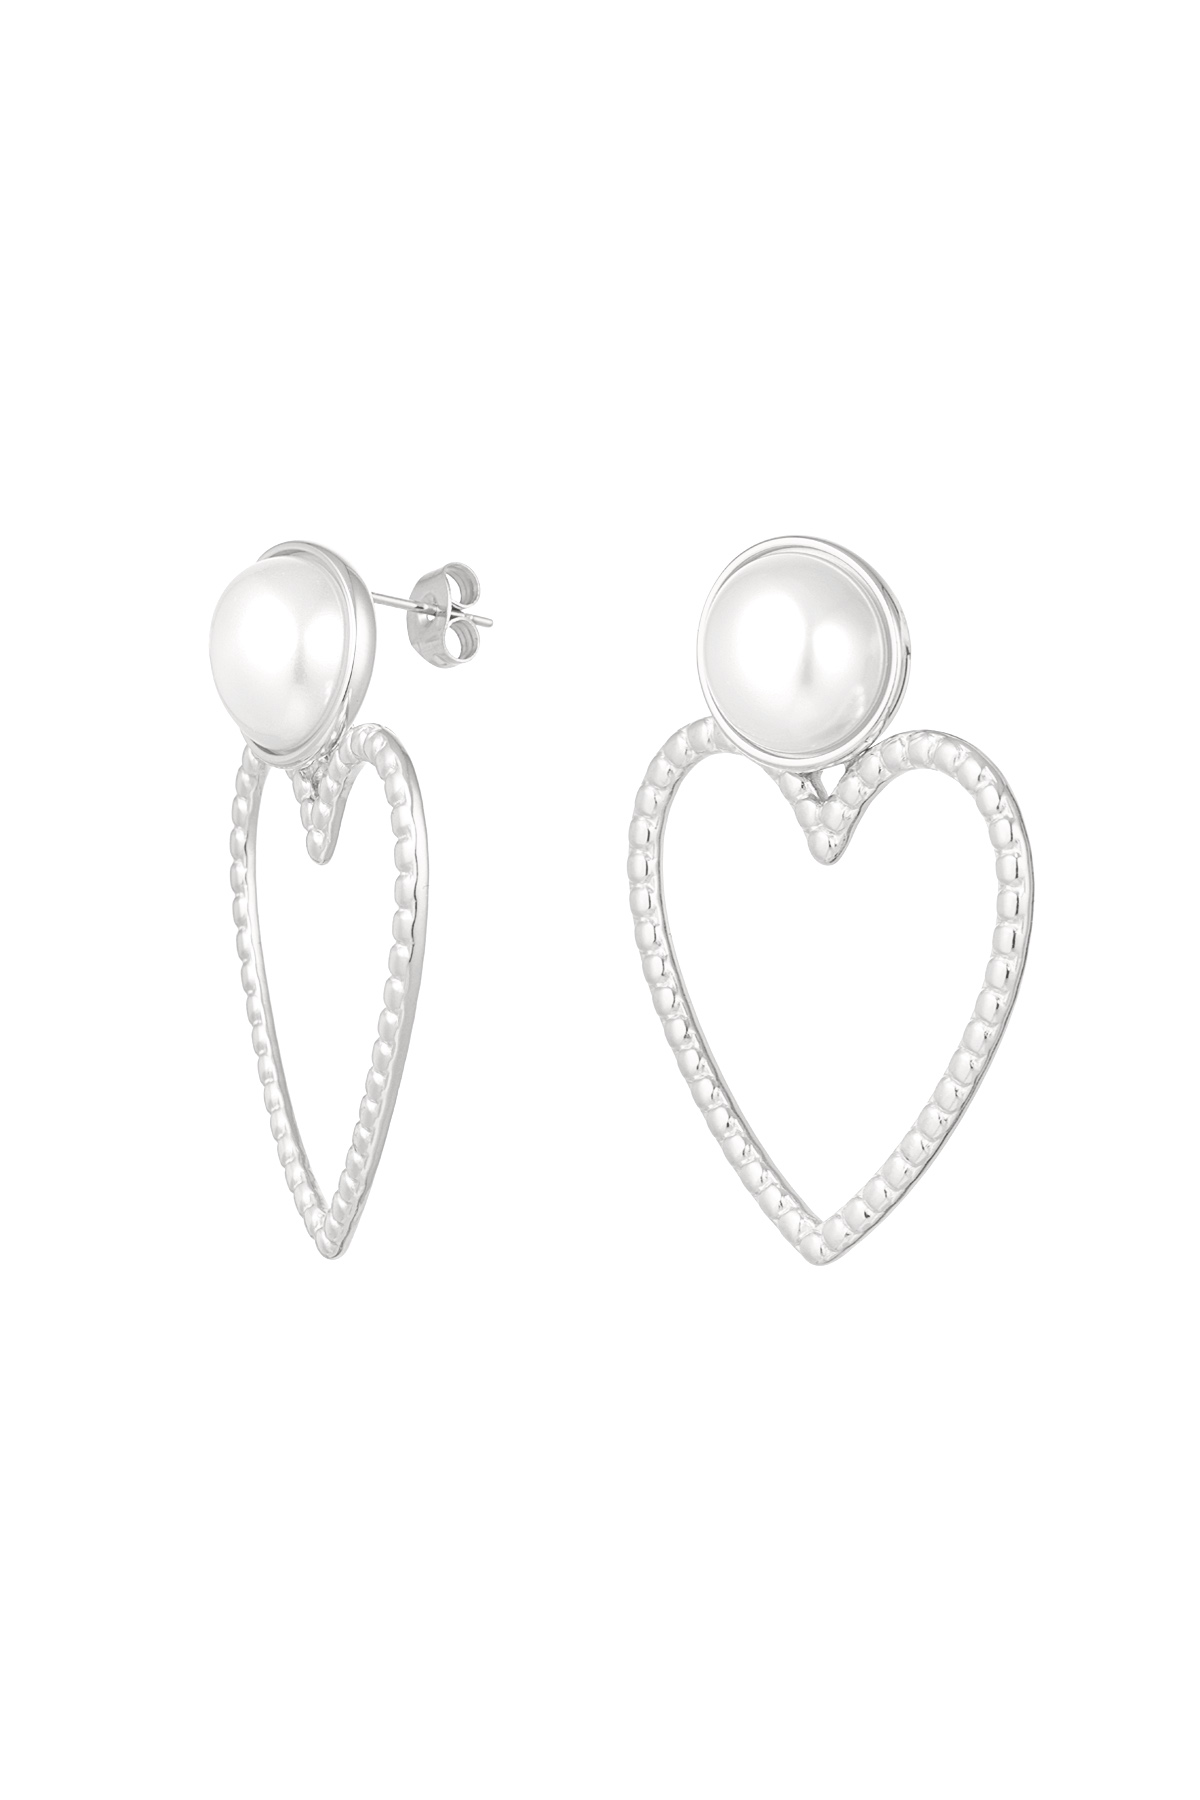 Ohrringe Herz mit Perle - Silber